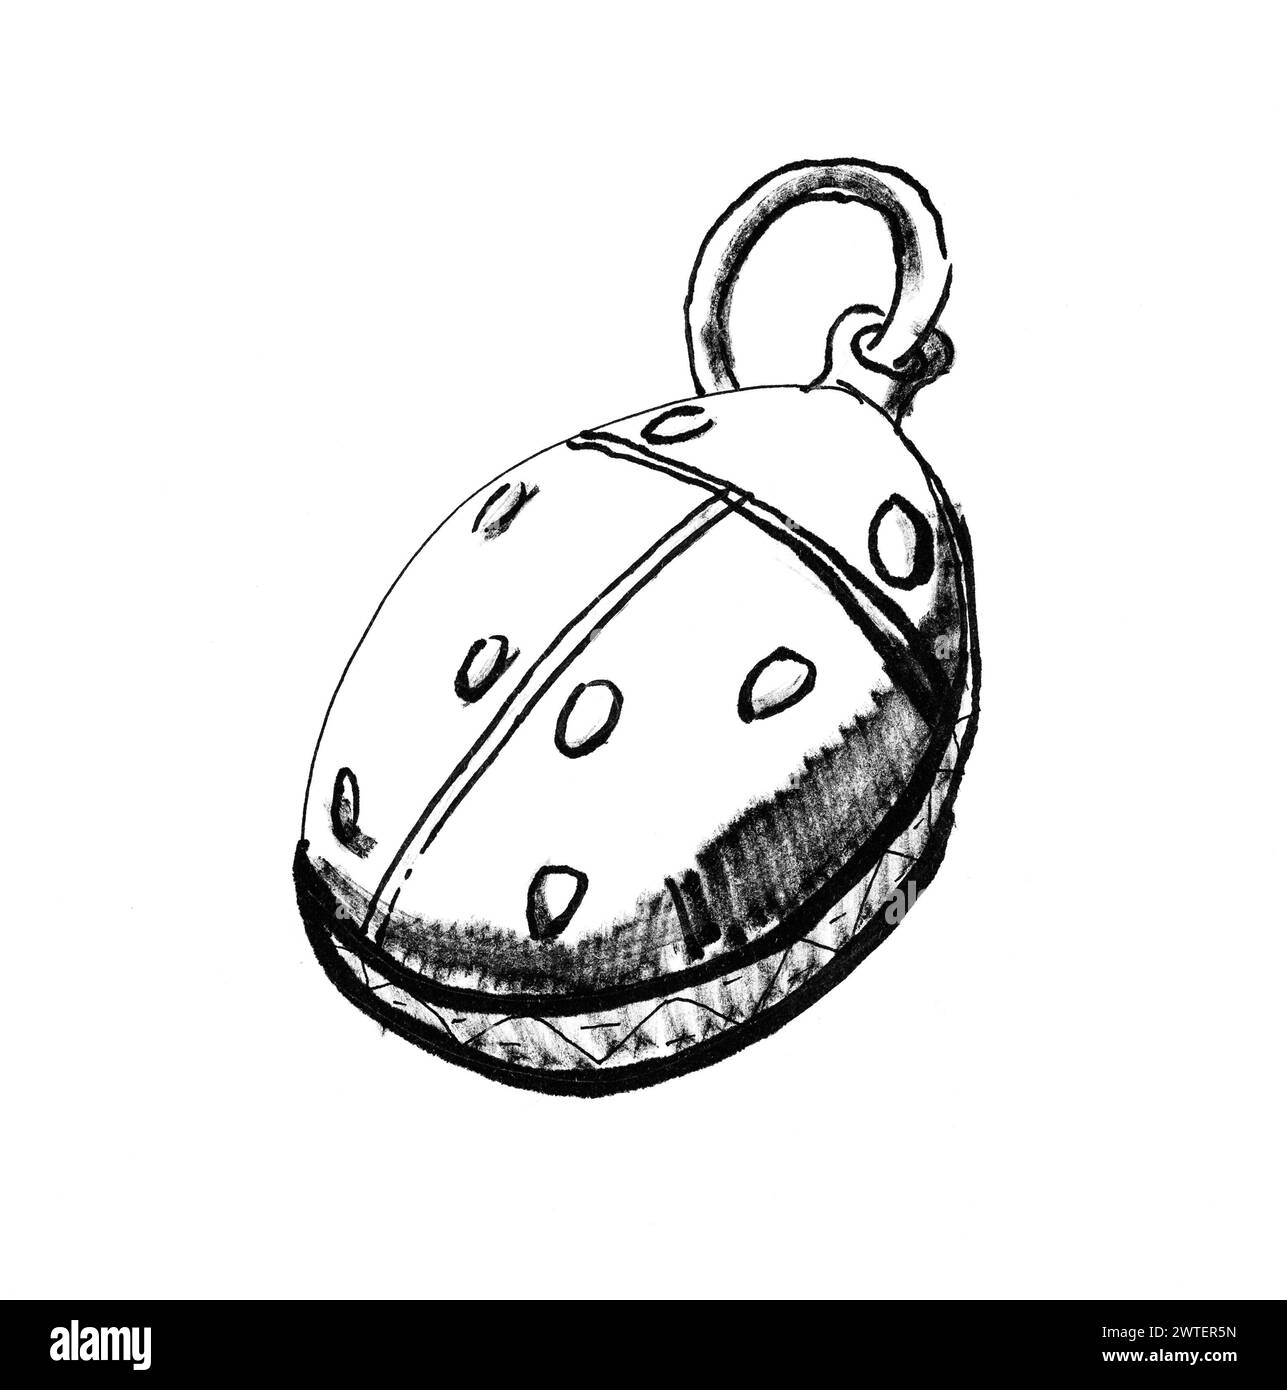 boceto de colgante en forma de mariquita dibujado a mano en rotulador negro sobre papel blanco Foto de stock